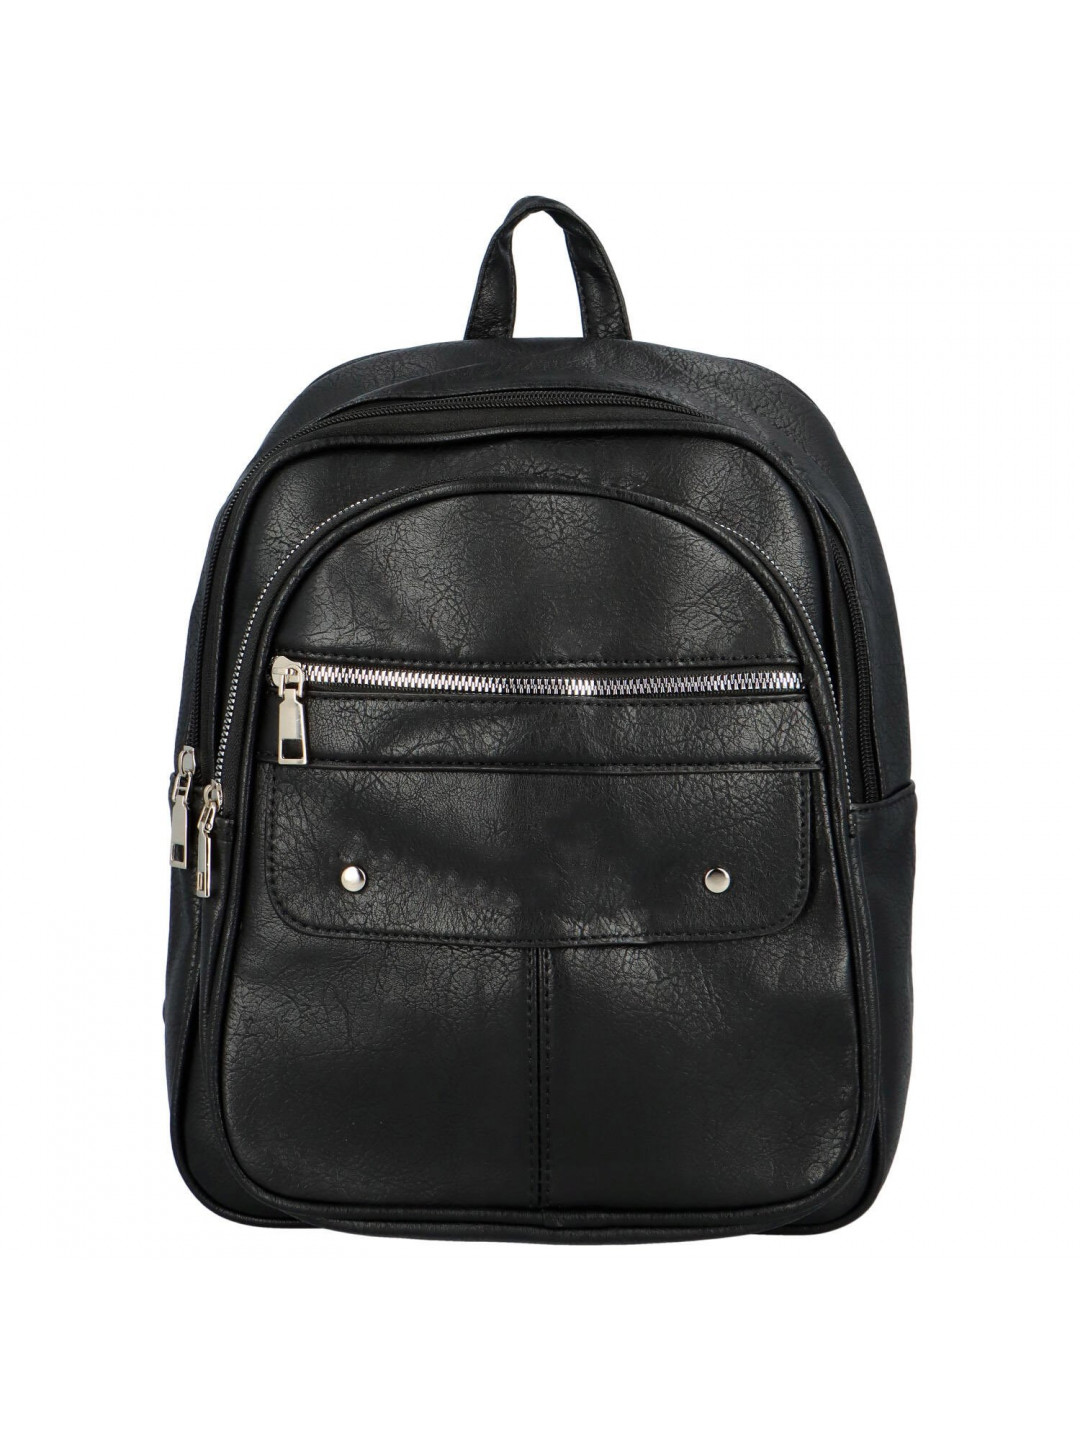 Trendy dámský kabelko-batoh Zens černá